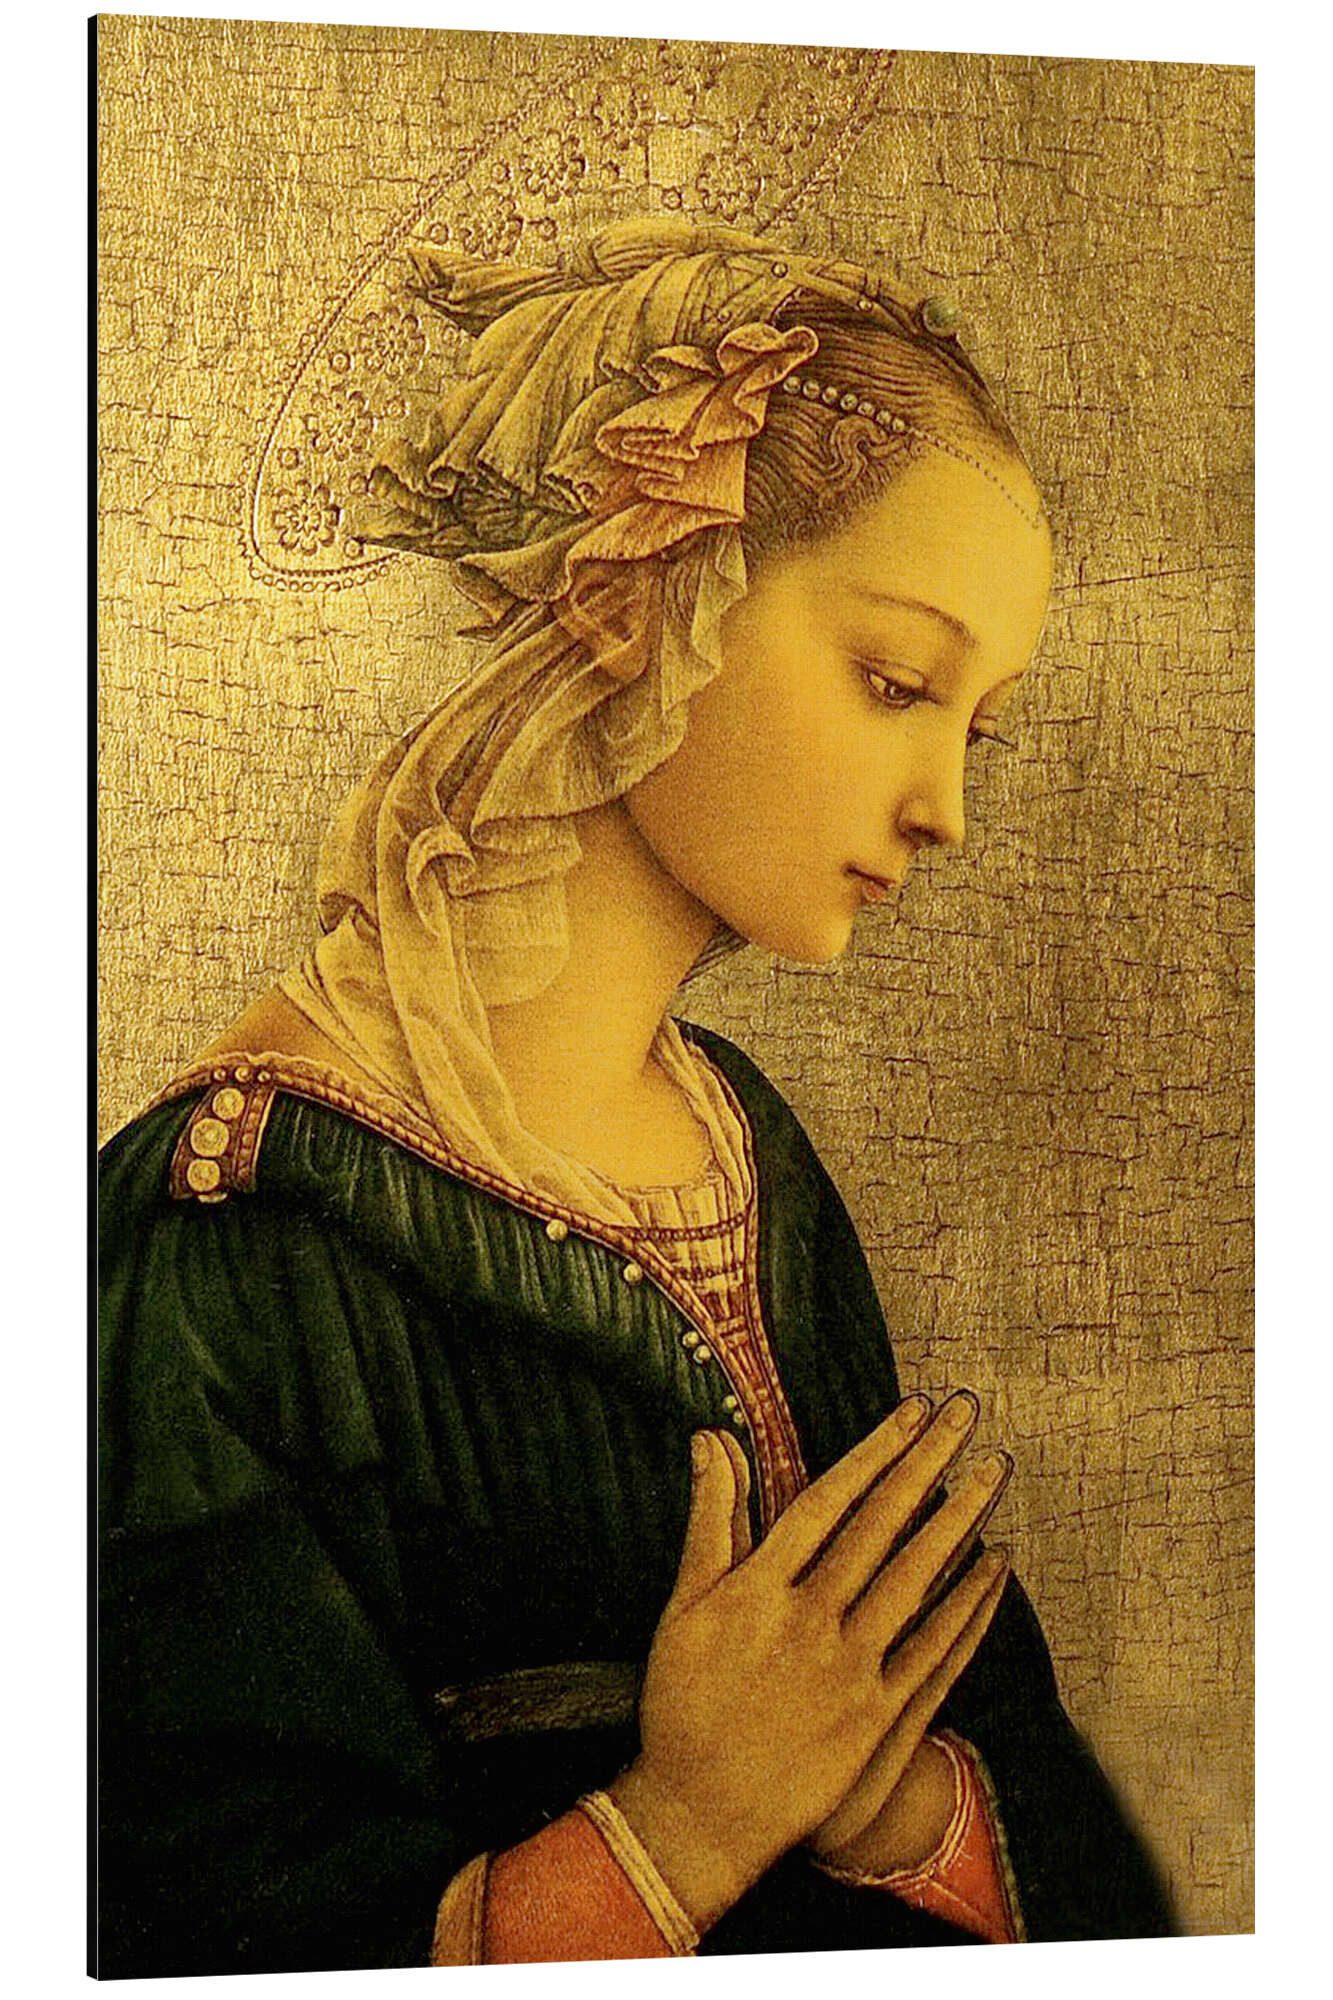 Posterlounge Alu-Dibond-Druck Fra Filippo Lippi, Madonna, Malerei